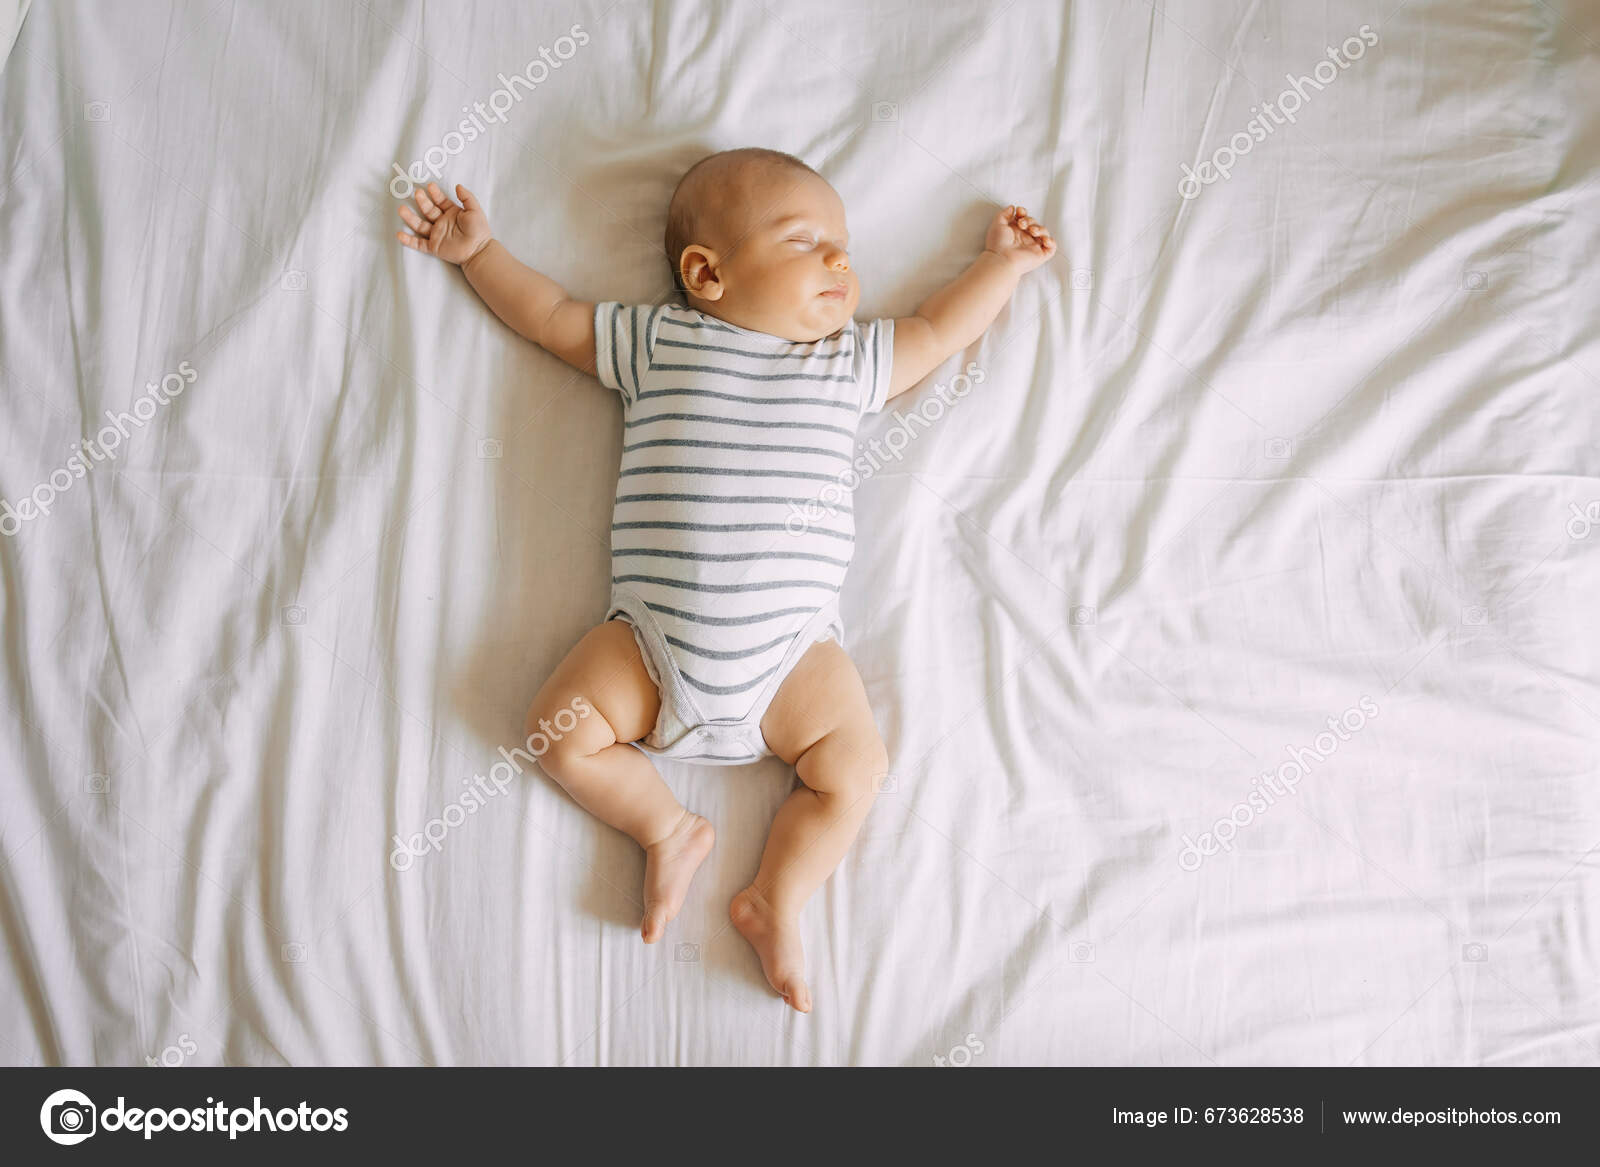 Ovanifrån Sovande Nyfödda Barn Ligger Säng Armar Och Ben Utsträckt —  Stockfotografi © ivankyryk #673628538